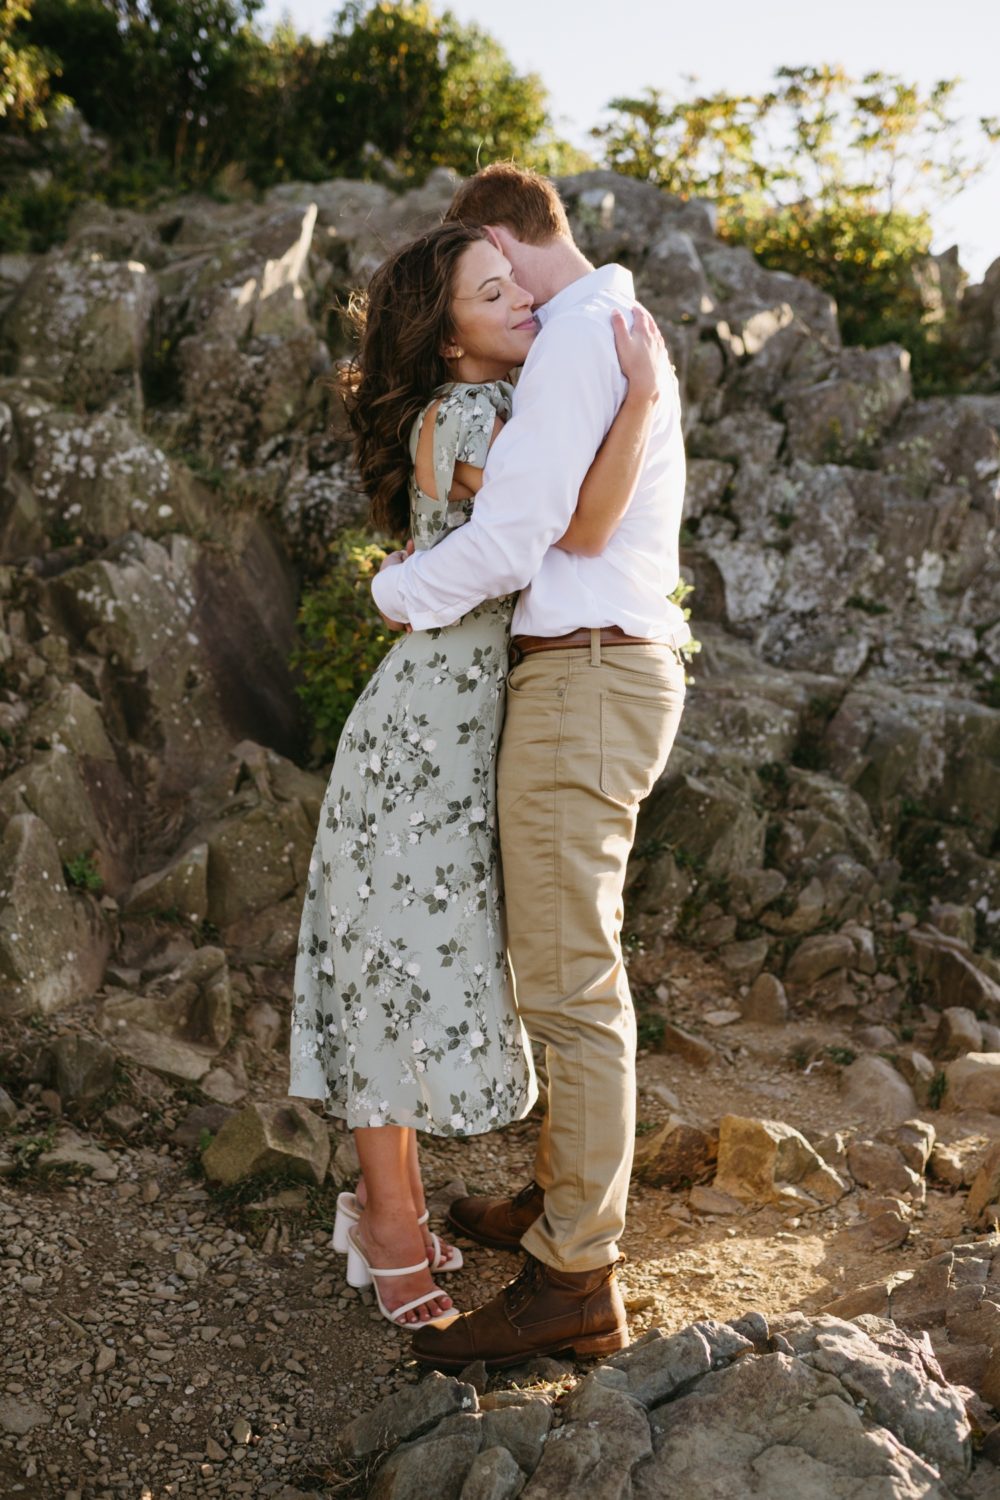 stony man Shenandoah engaged couple hugging floral dress white shirt